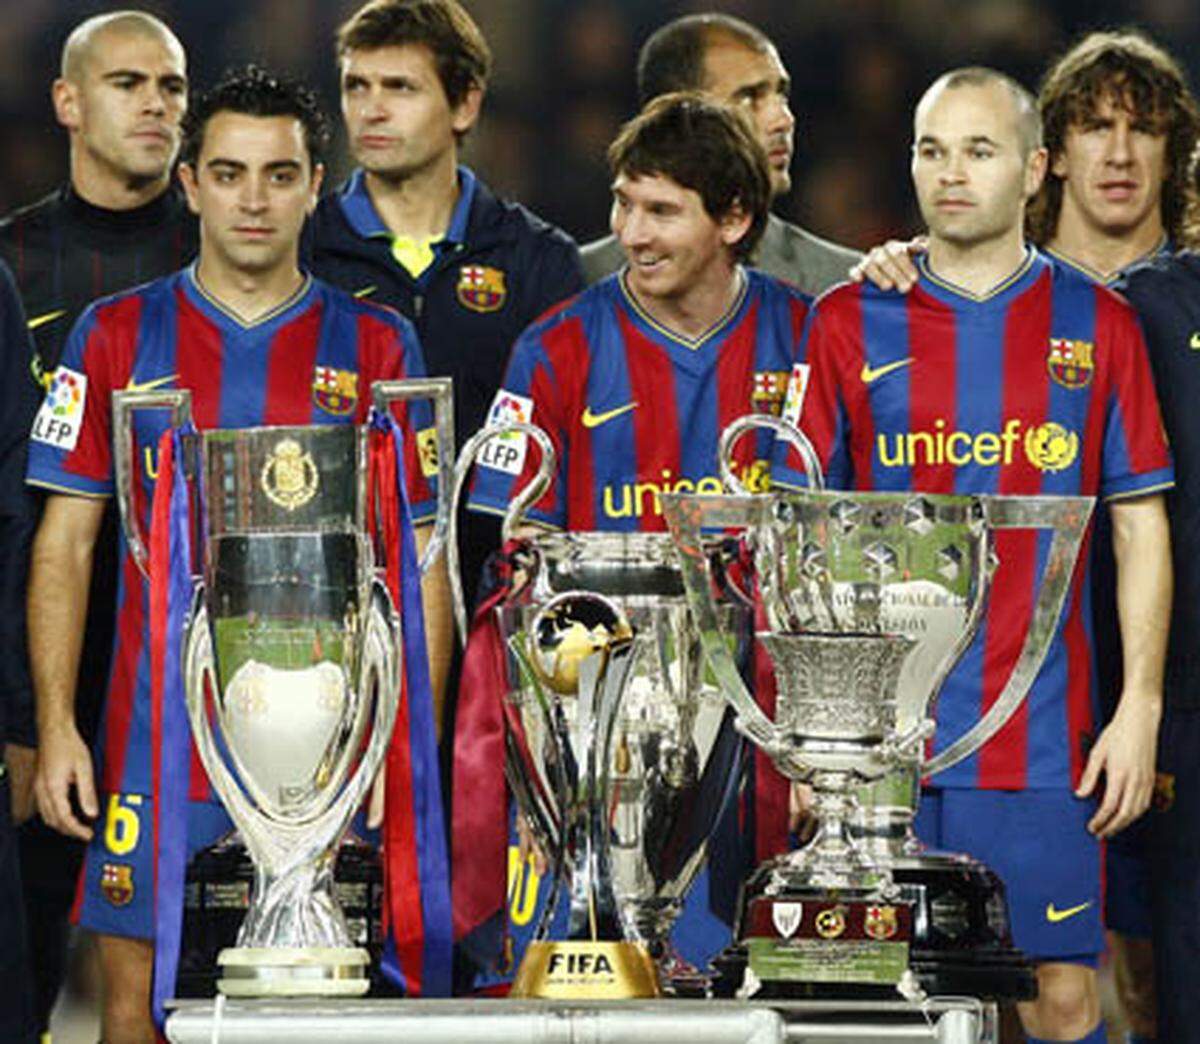 Der FC Barcelona setzte in dieser Saison generell neue Maßstäbe an Erfolg: Auch durch die Mithilfe von Lionel Messi (23 Saisontore) holte der Klub als erster alle sechs möglichen Titel: Als erster Klub überhaupt gewann Barca innerhalb eines Jahres alle sechs möglichen Titel (Champions League, Uefa Supercup, Fifa-Klub-WM, Meisterschaft, Pokal und spanischer Superpokal).